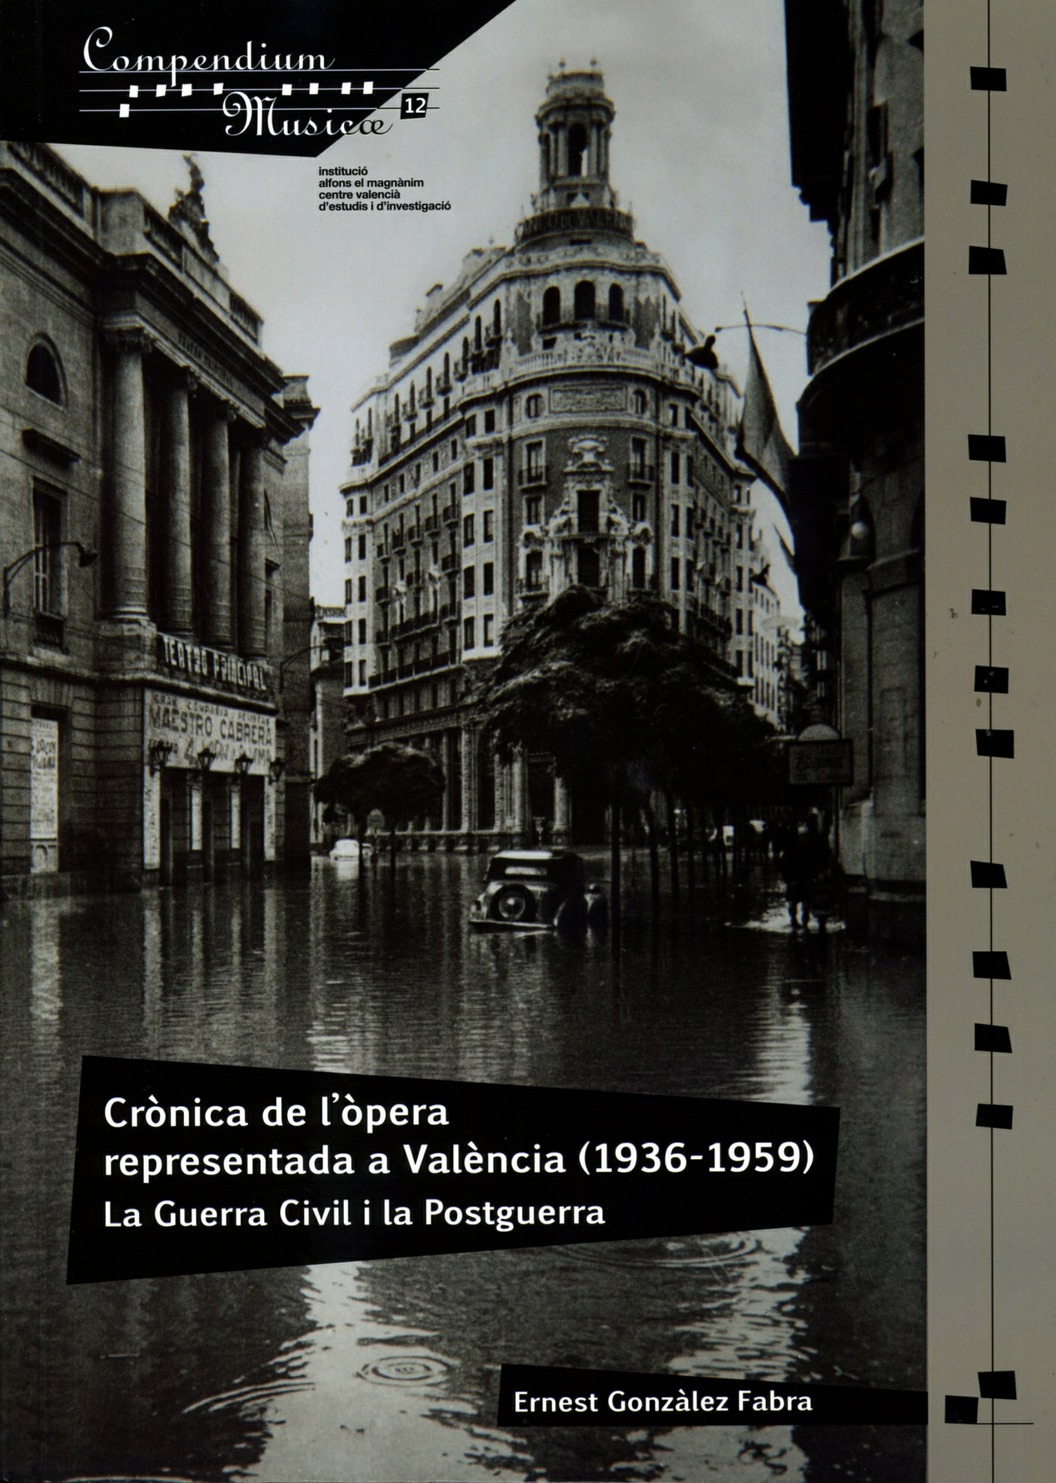 "Crònica de la òpera representada a València (1936-1959). La Guerra Civil i la Postguerra"